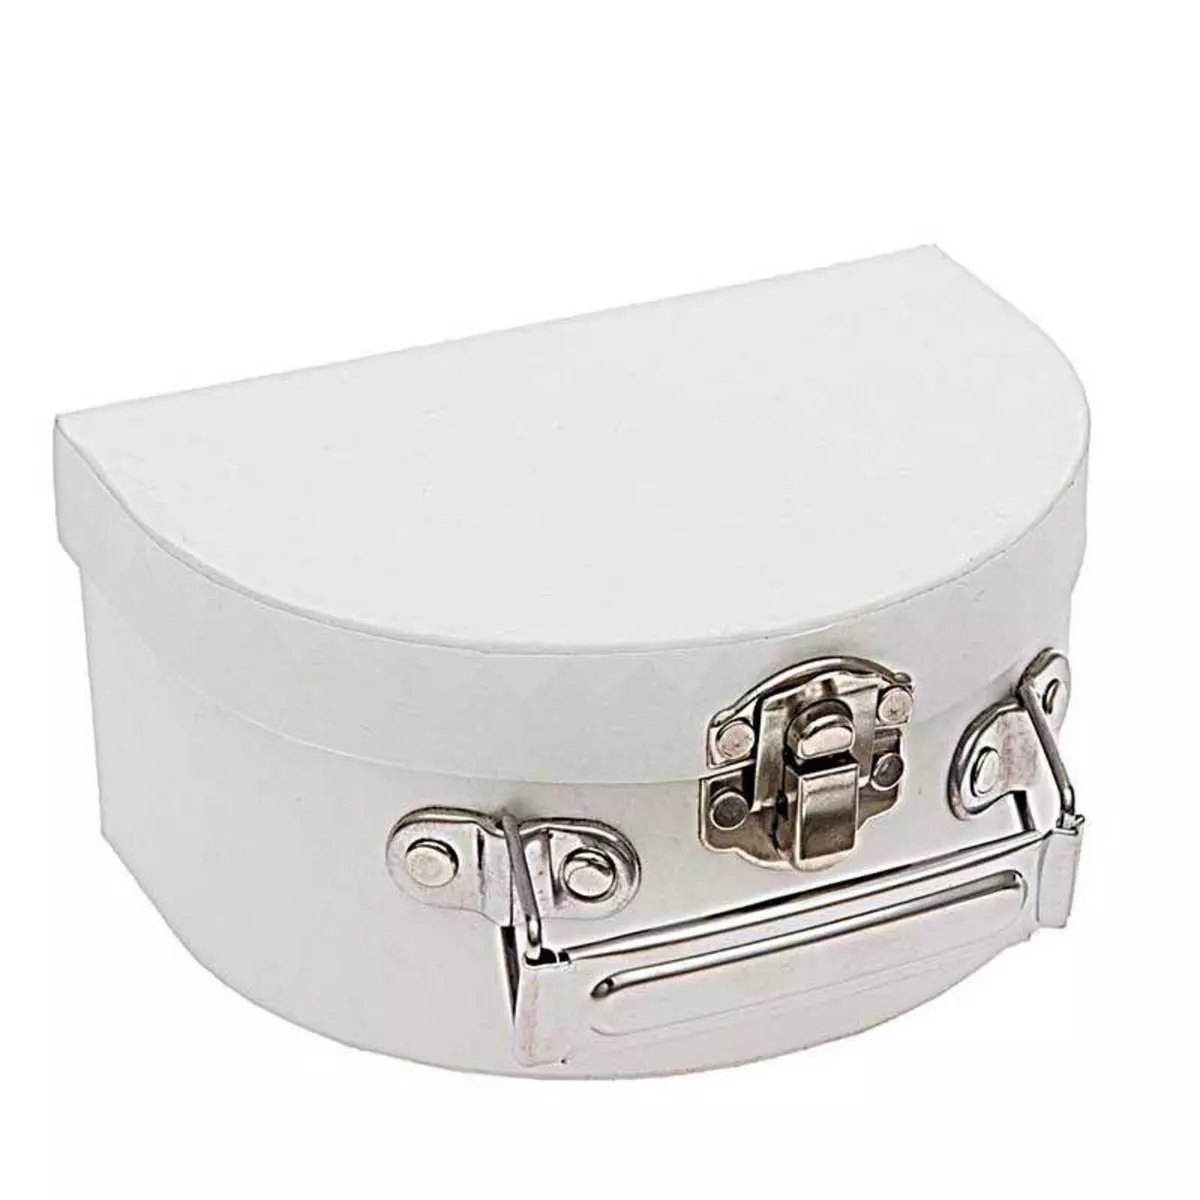 RICO DESIGN Petite valise en carton semi-circulaire blanche à décorer - 12 x 9 x 6 cm